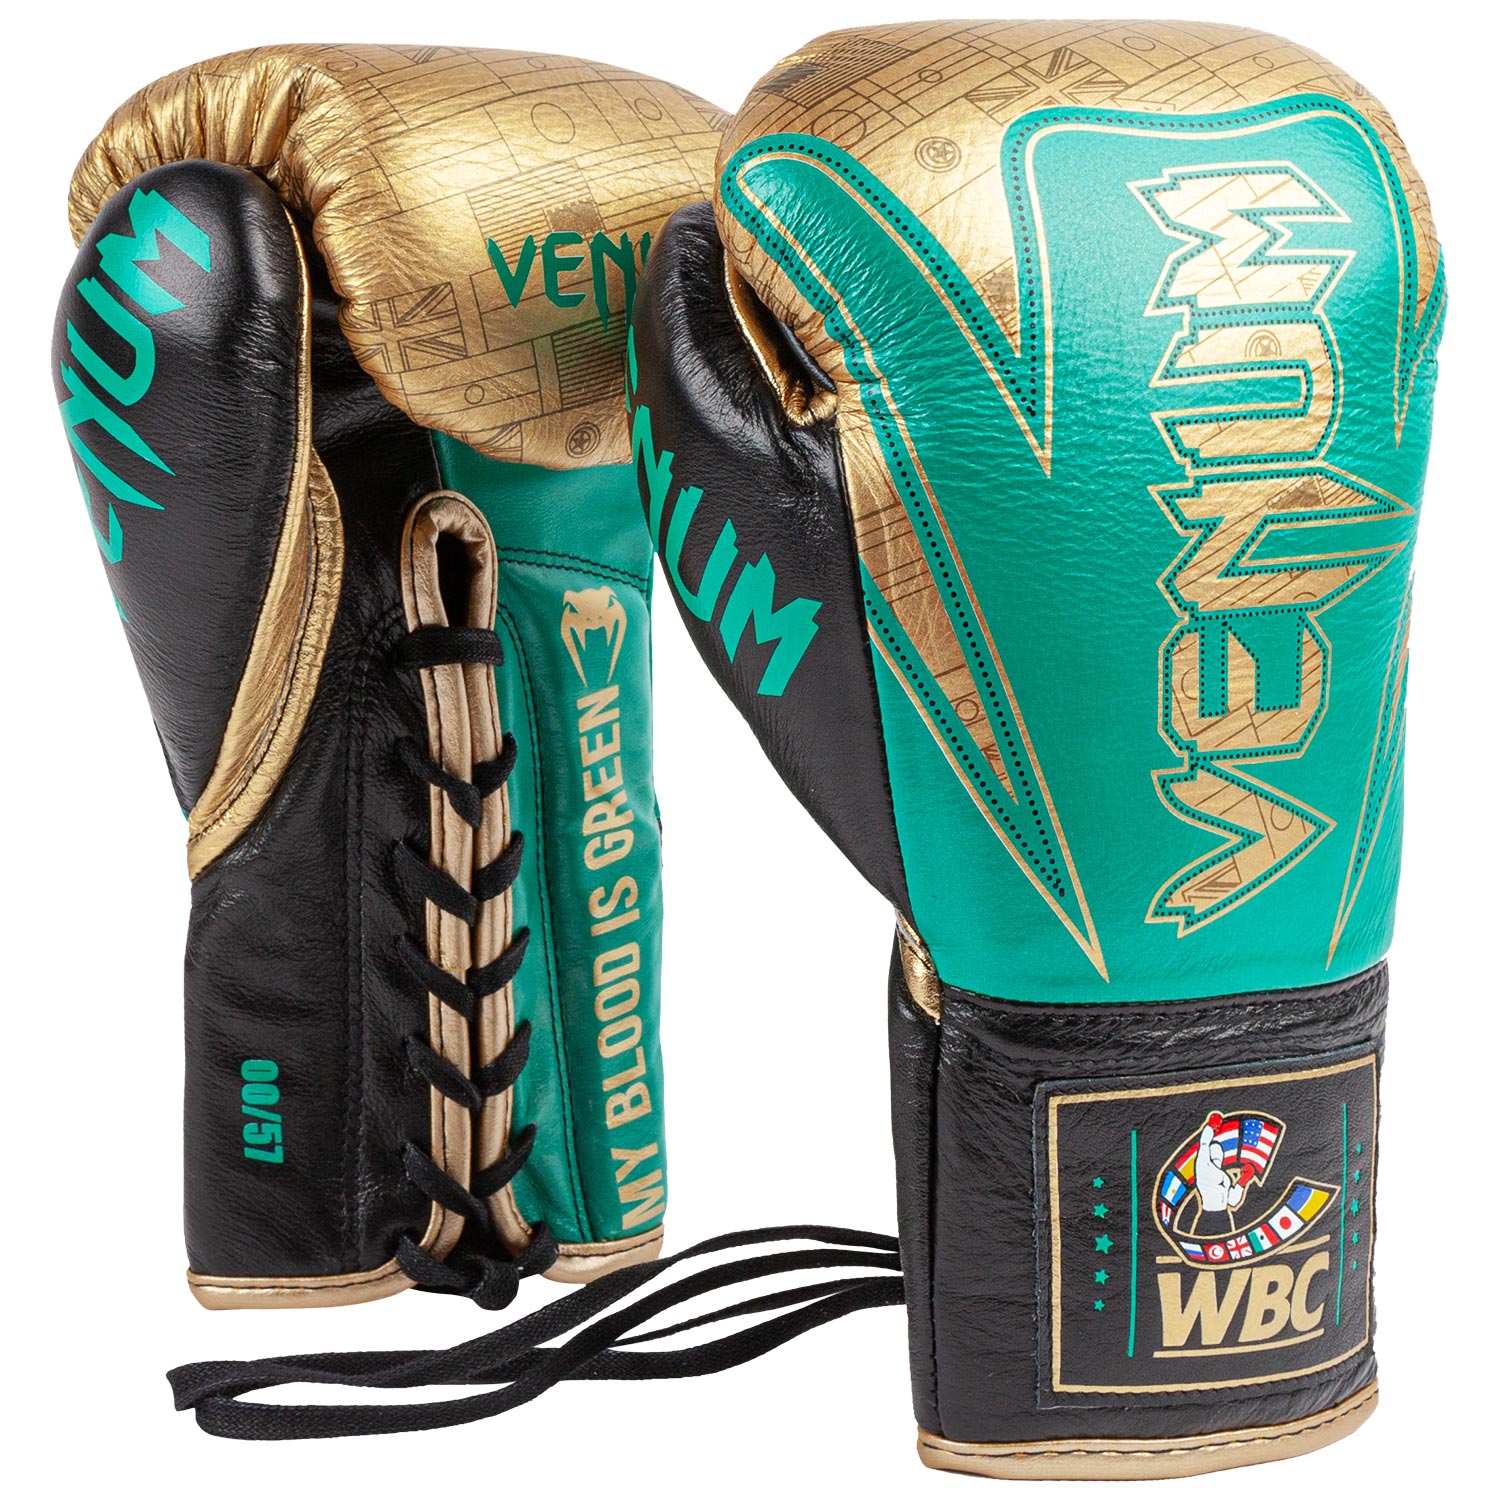 WBC Venum professionelle – M HAMMER Venum Boxhandschuhe Auflage - Schweiz - limitierte